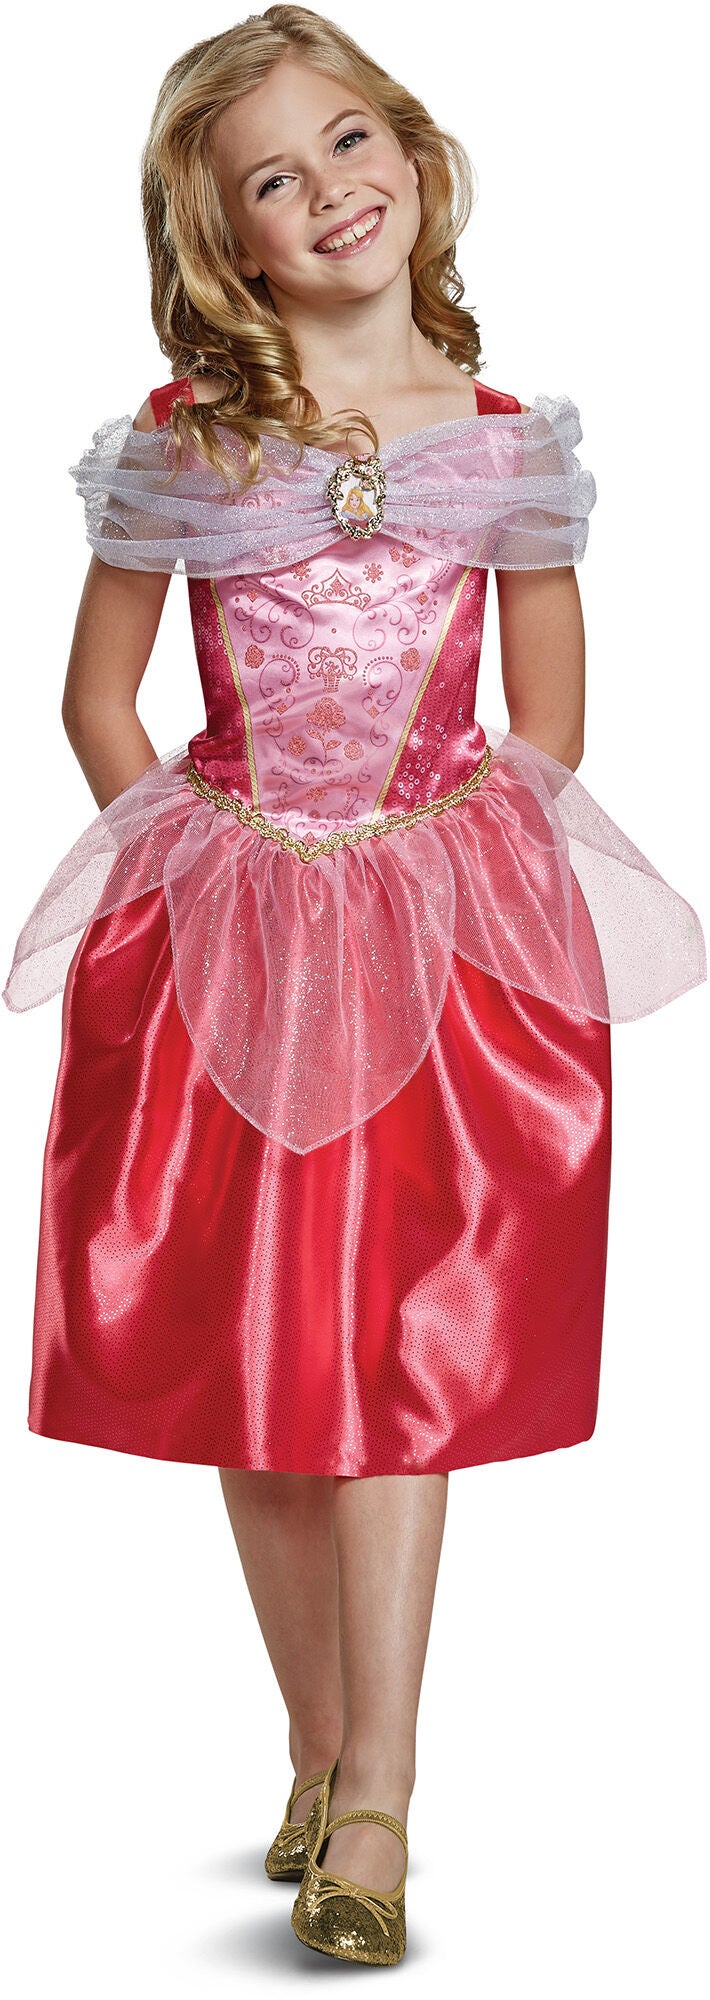 Disney Prinzessinnen Kostüm Dornröschen, 3-4 Jahre von Disney Prinzessin